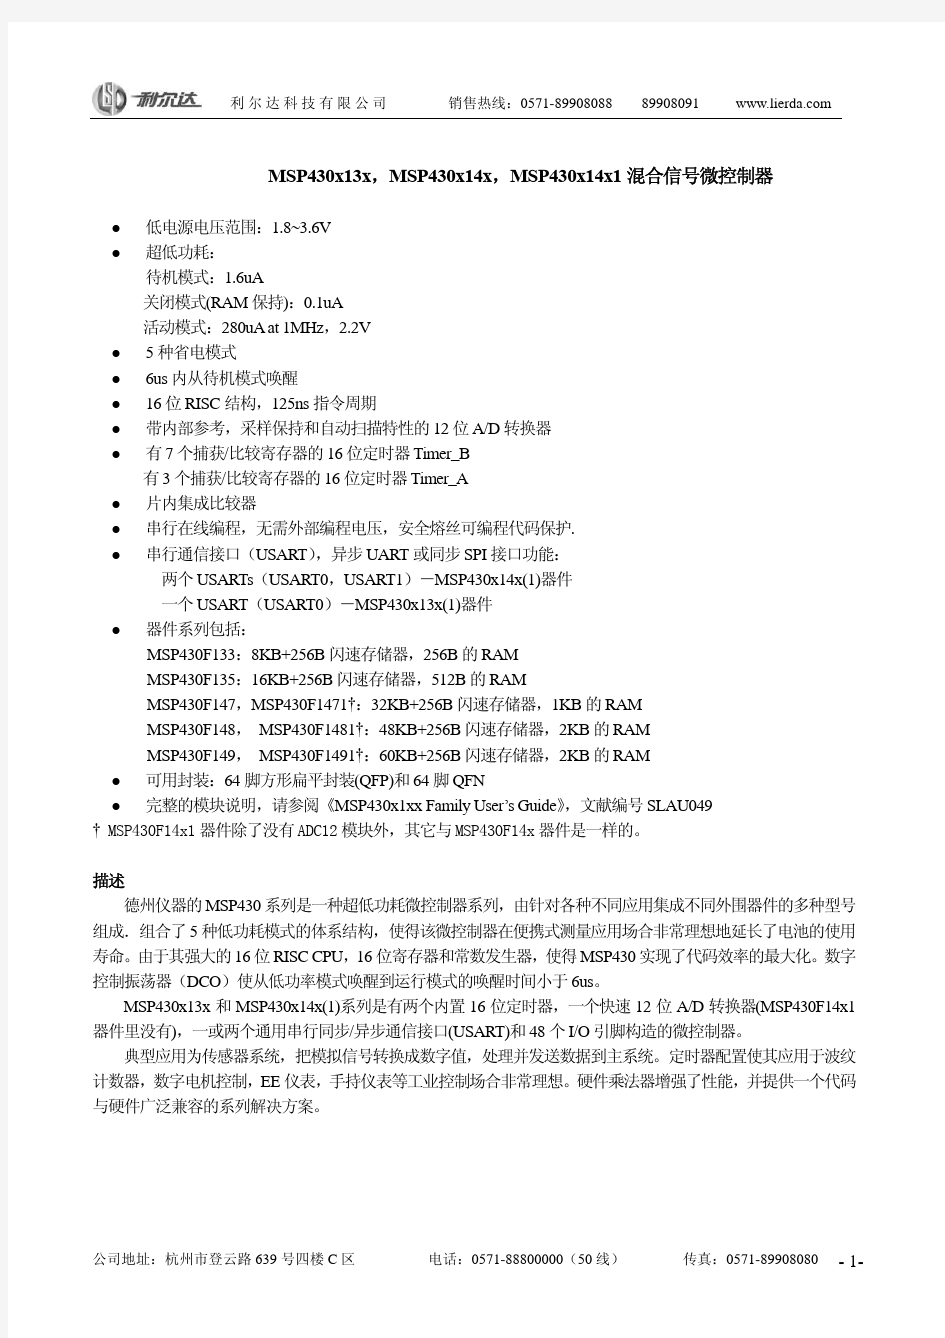 MSP430F13x_F14x_cn中文资料